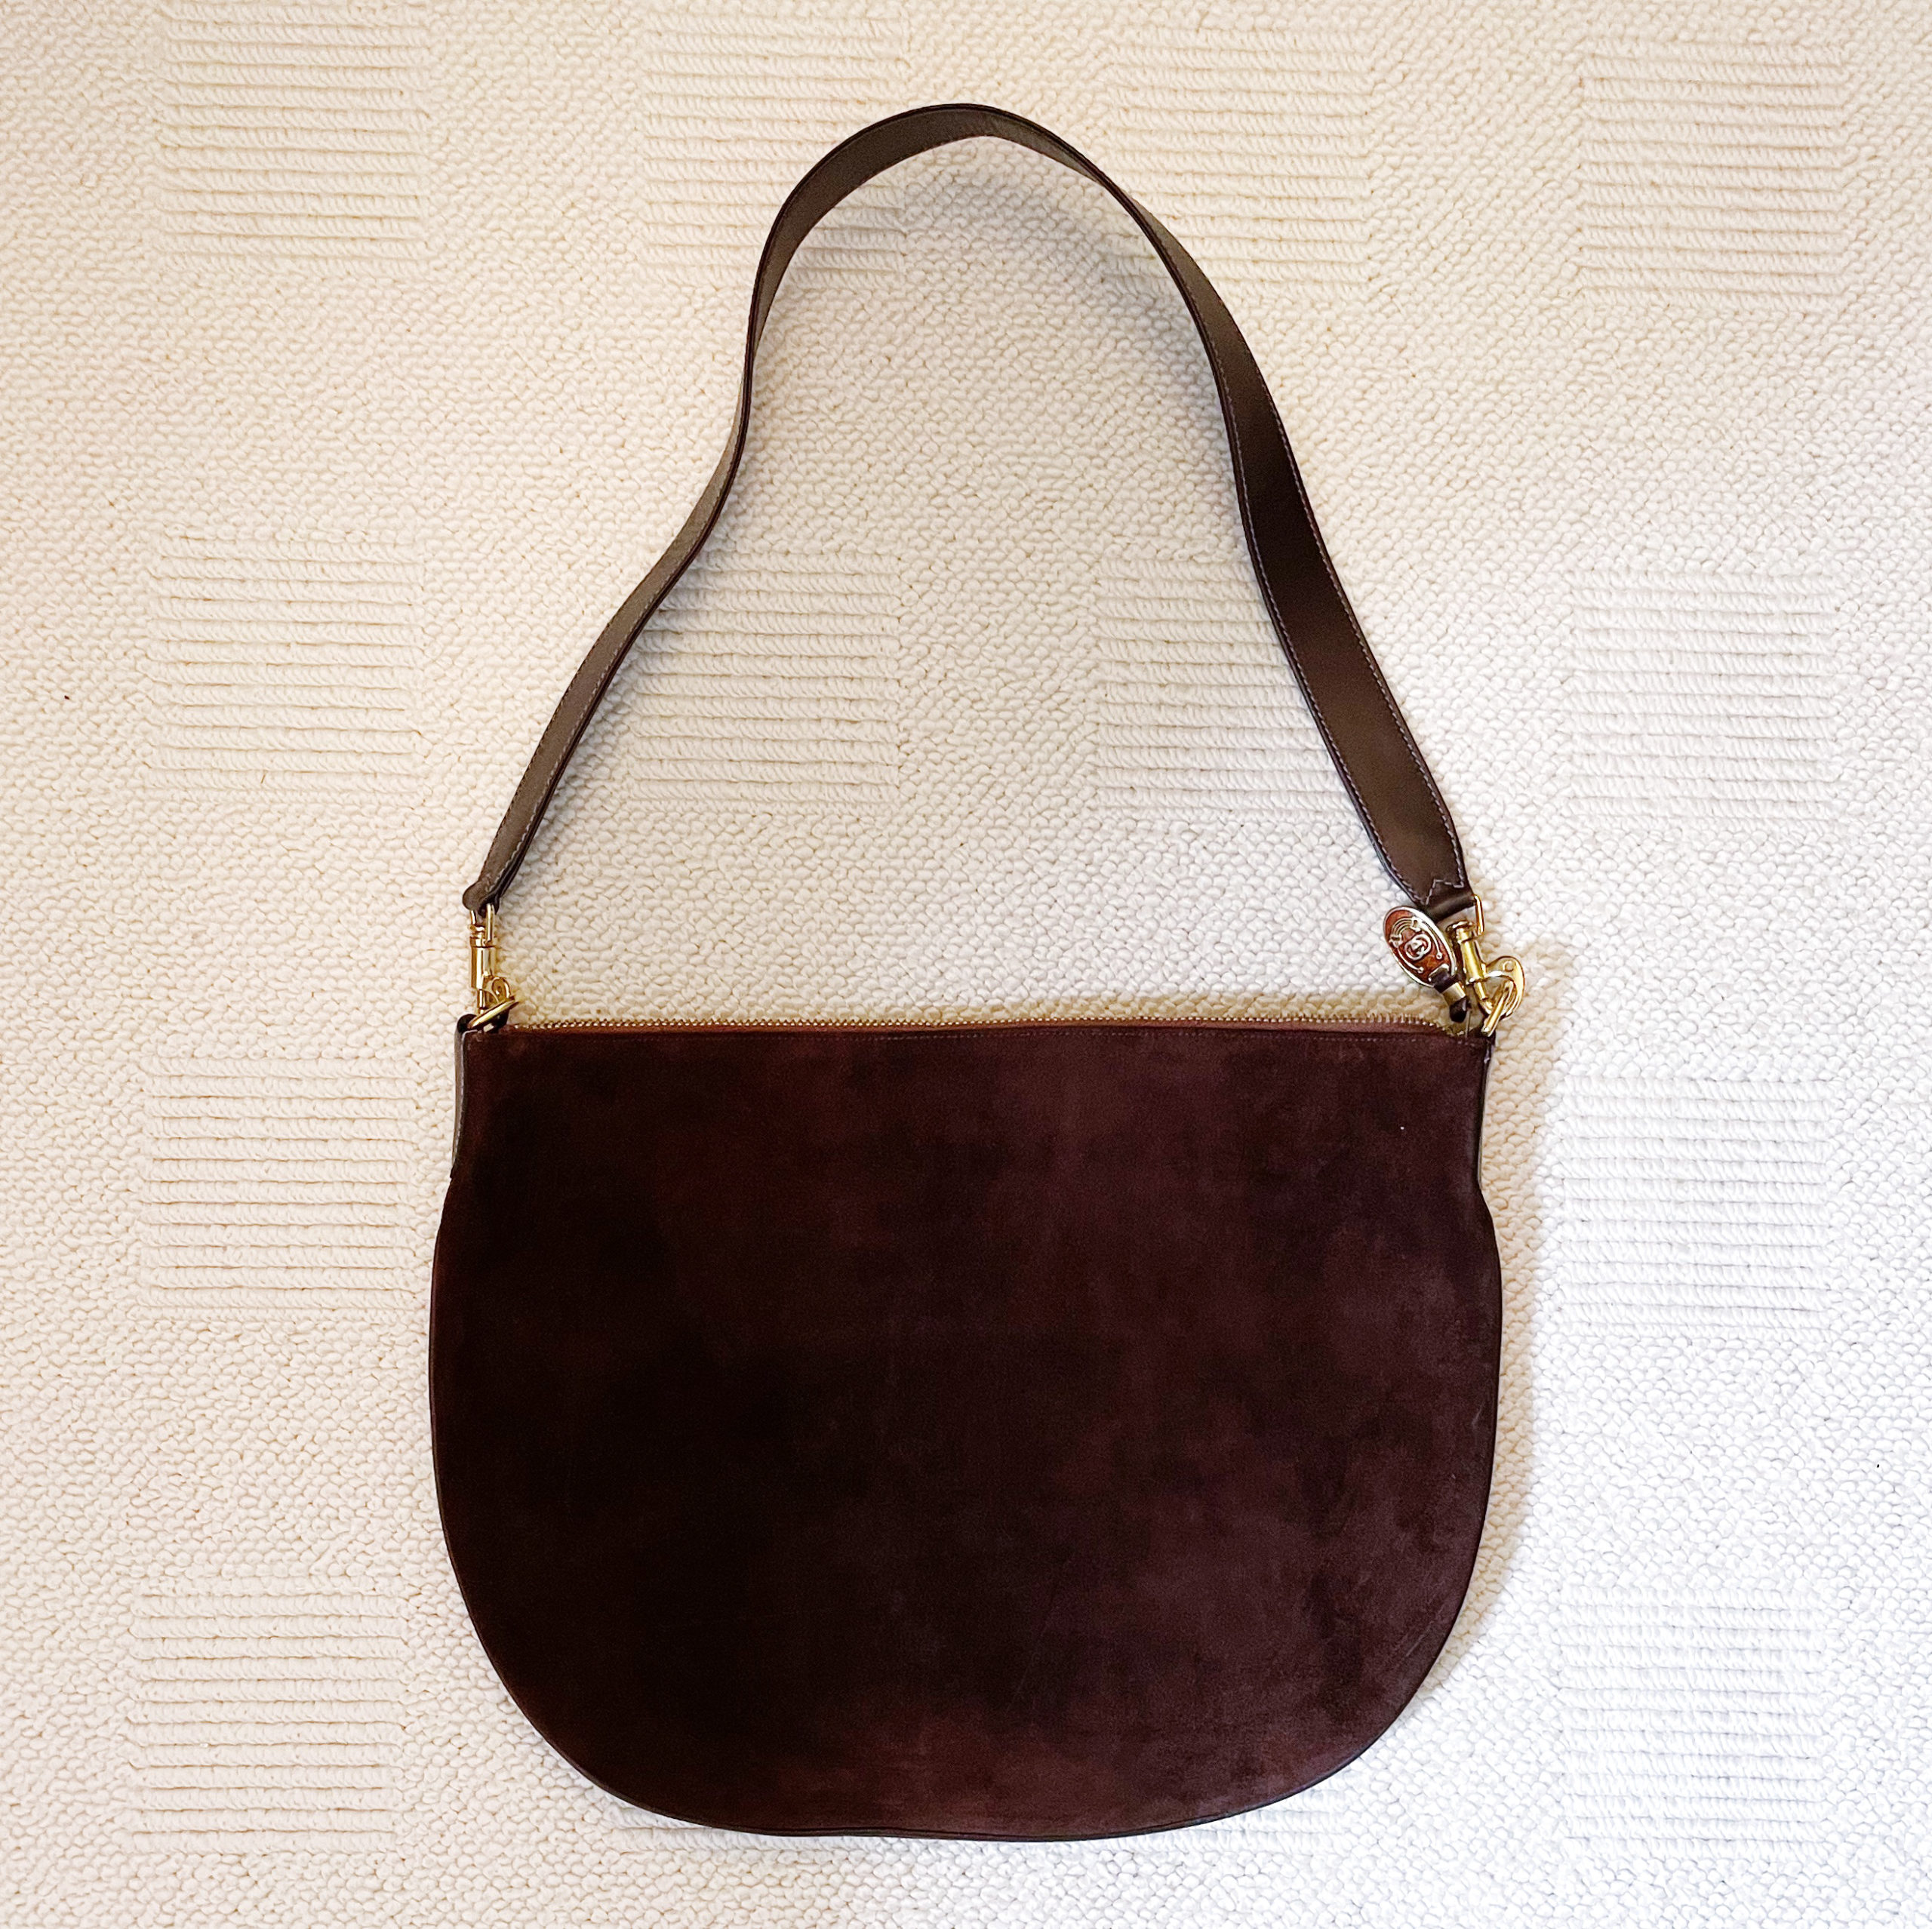 Handbag Chanel Black in Suede - 31340740